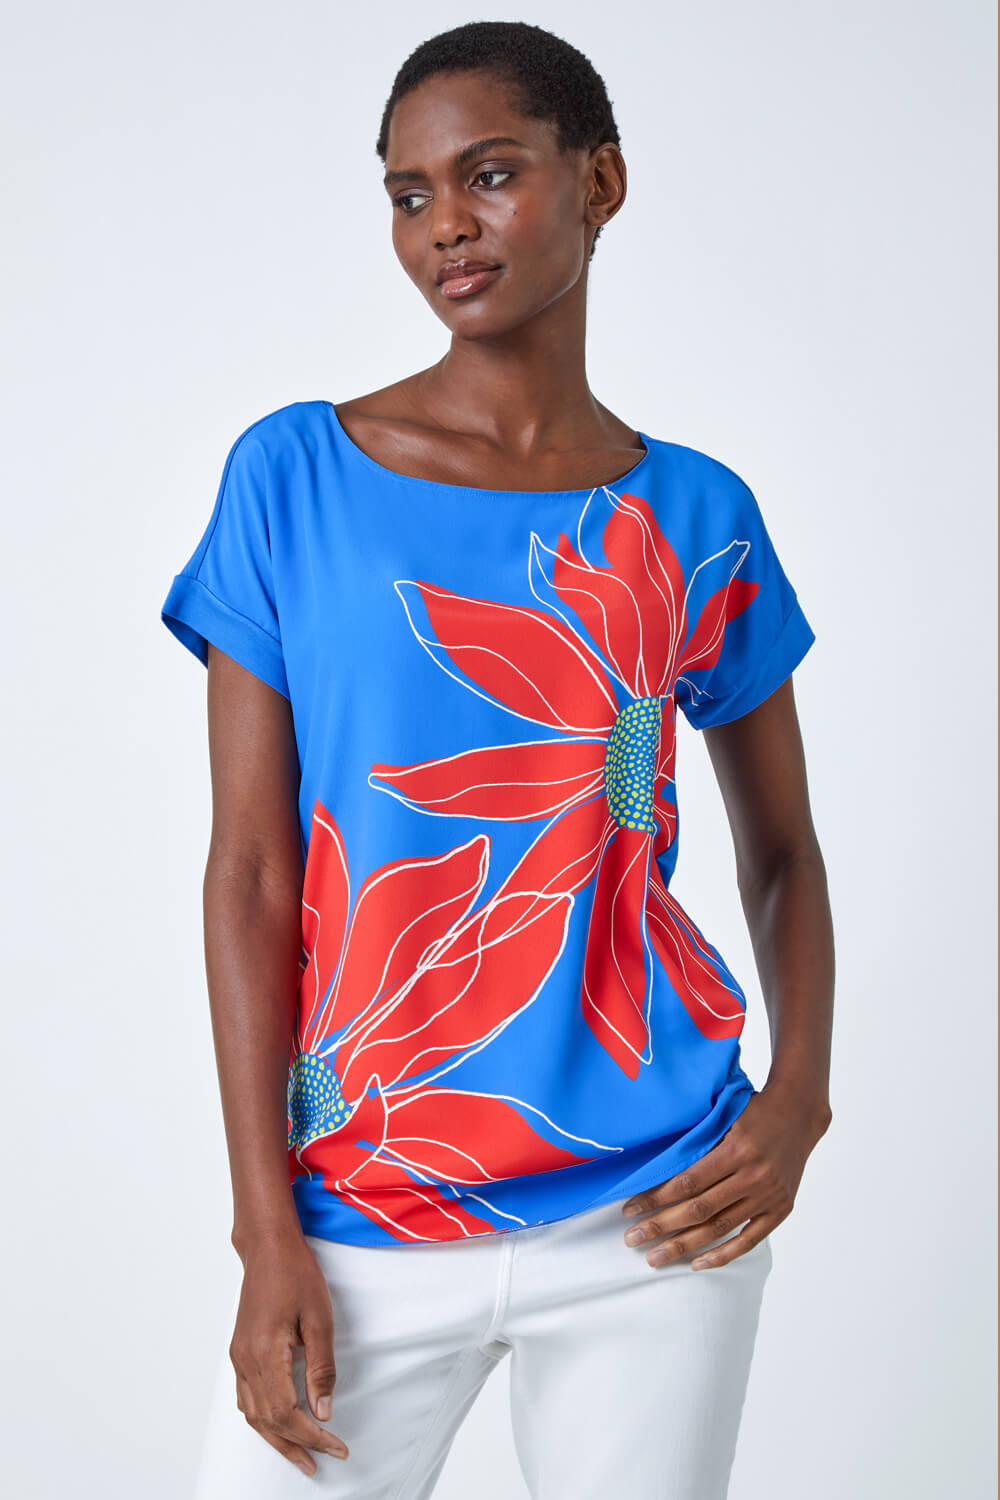 ORANGE Contrast Floral Print T Shirt, Image 2 of 5